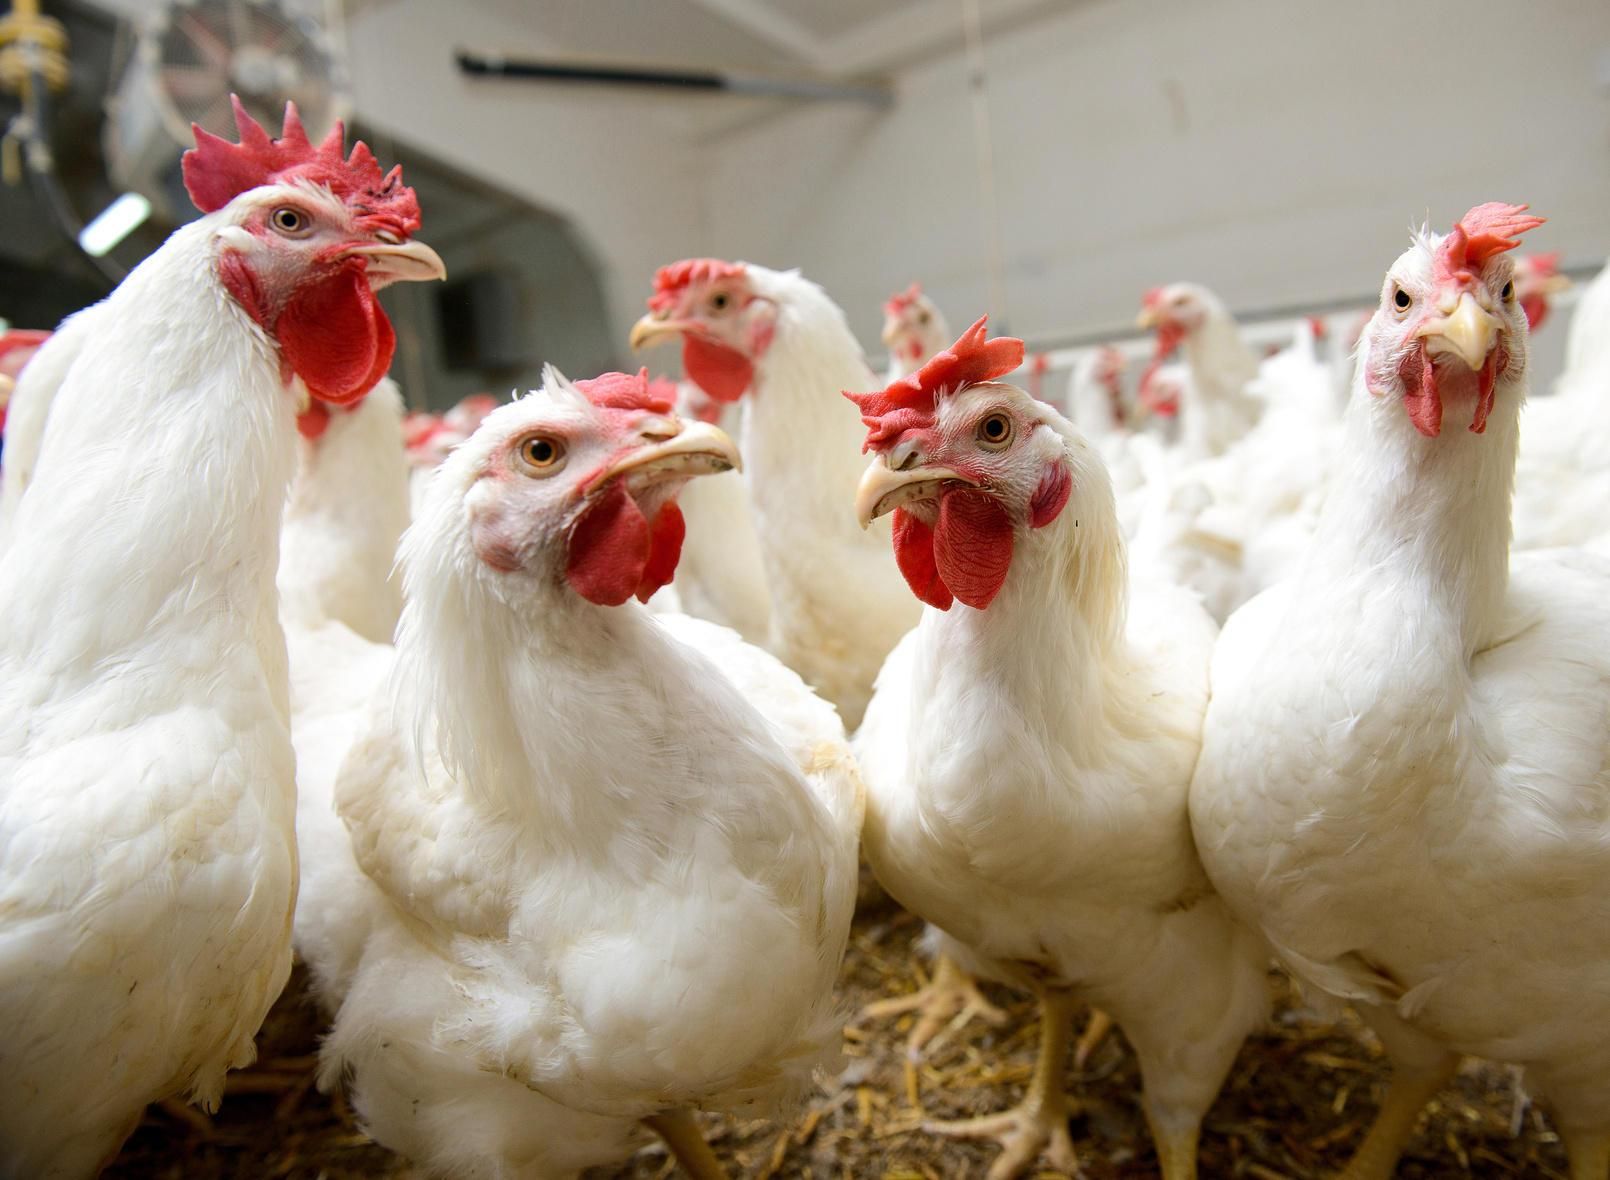 Споживчі ціни на курятину залишаються стабільно найнижчими, – Союз птахівників України